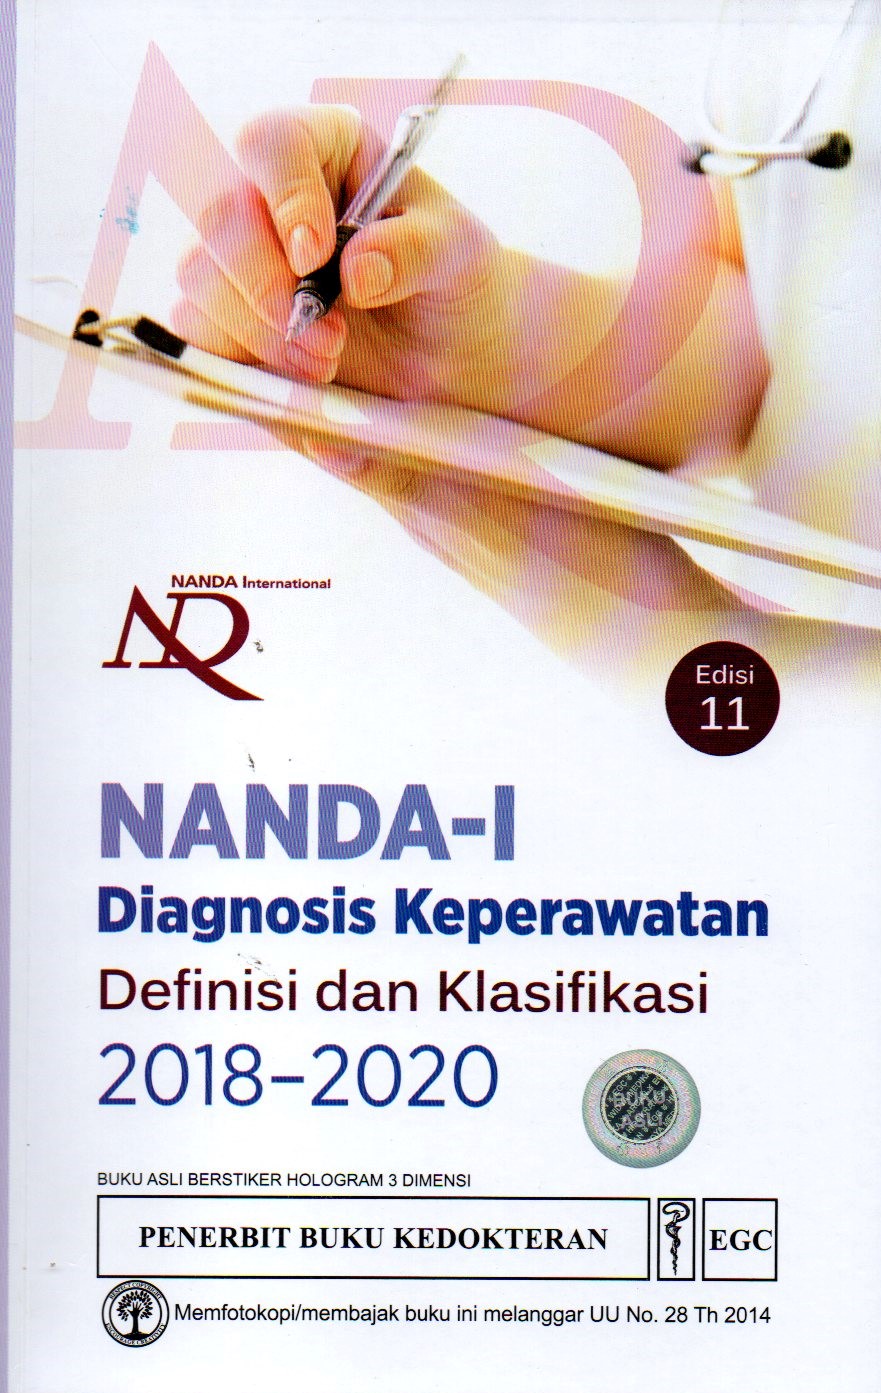 Nanda-I : Diagnosis Keperawatan Definisi dan klasifikasi 2018-2020